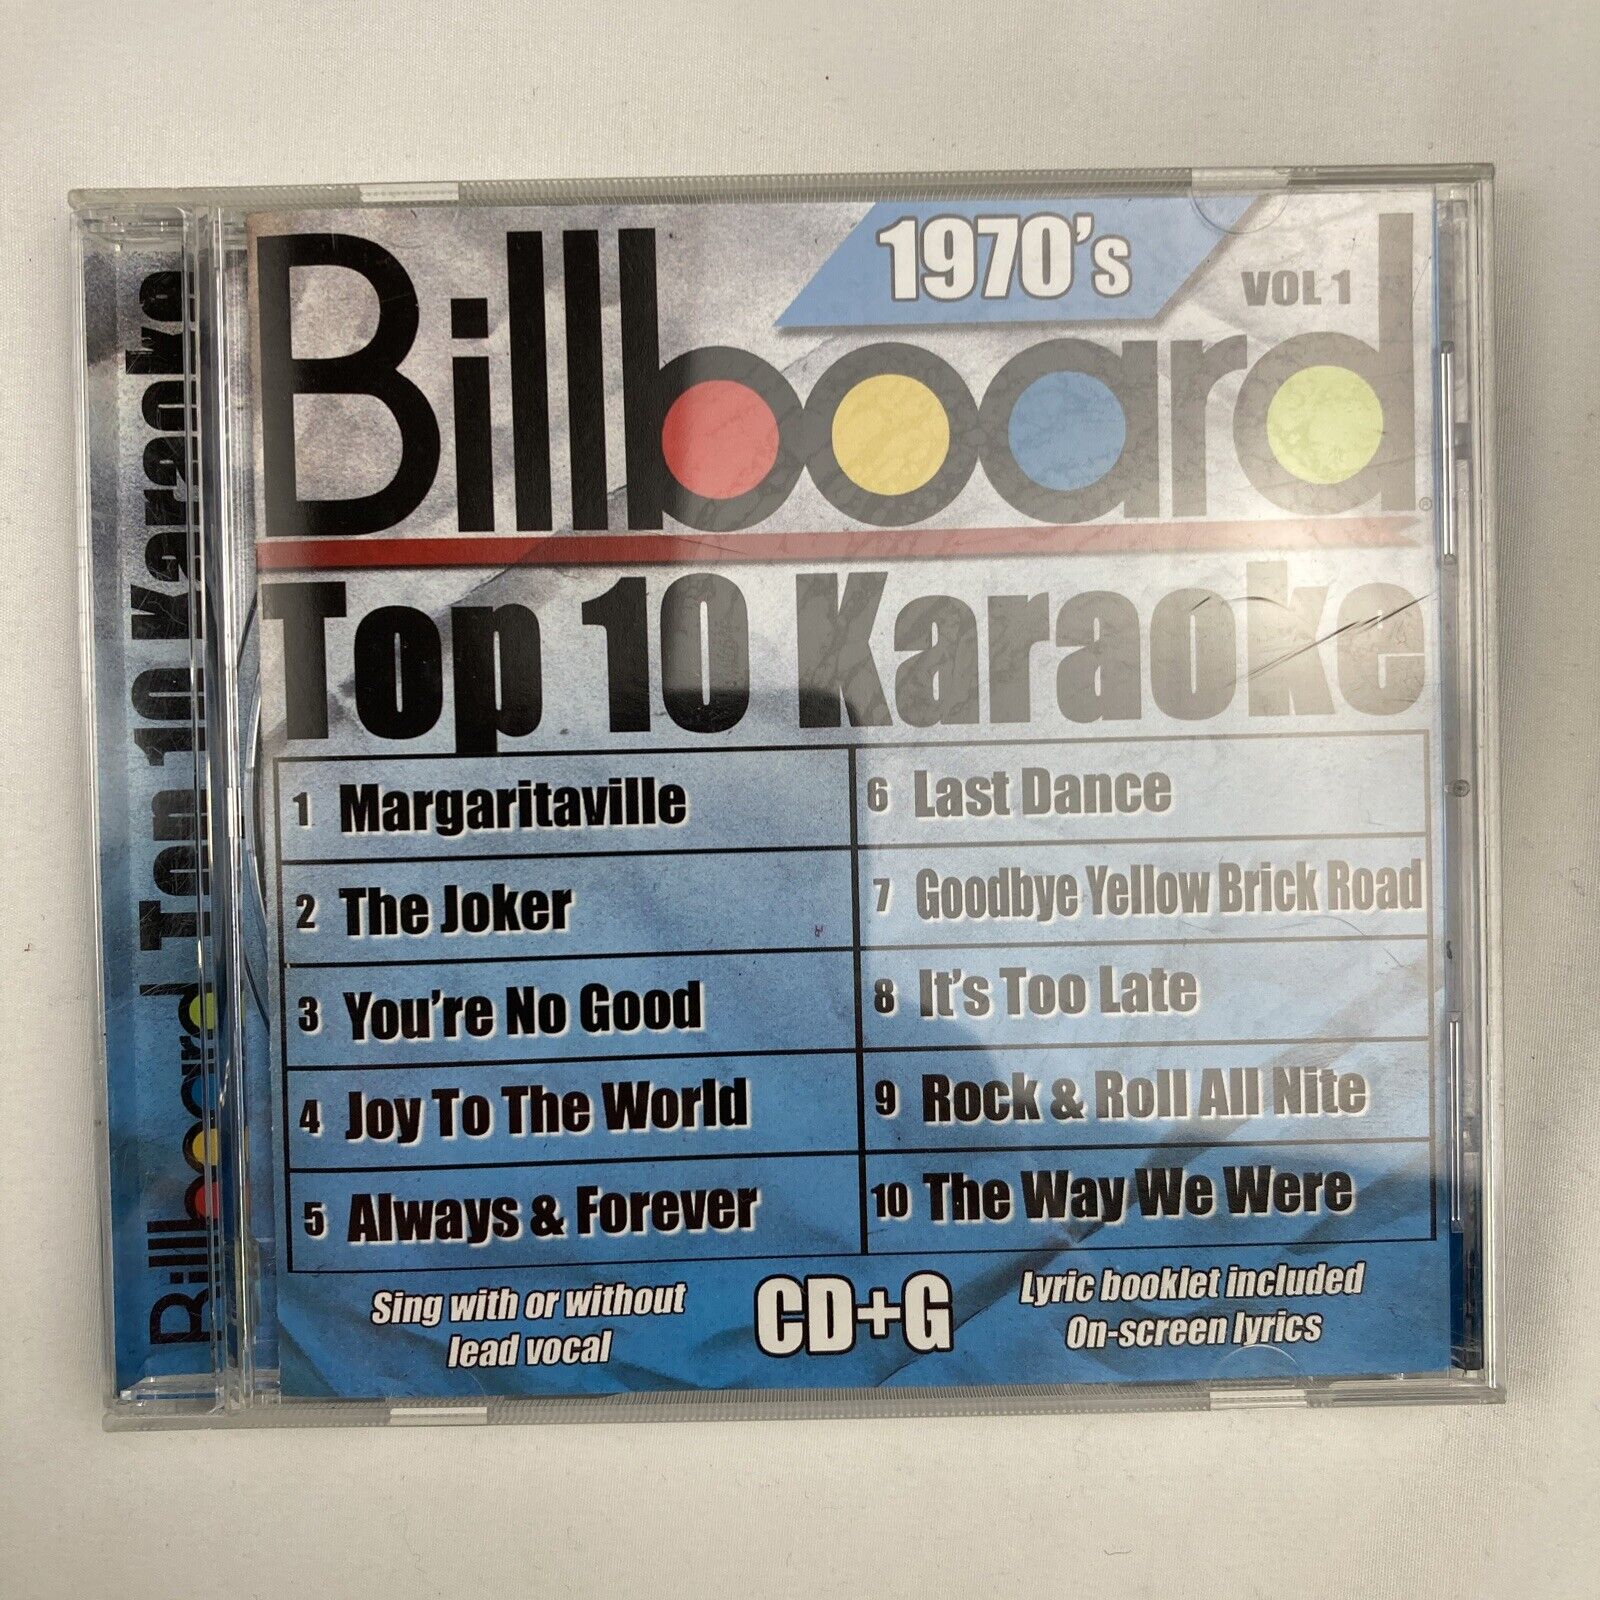 Billboard Top-10 Karaoke - 1970's Vol. 1 (cd+g) (cd, 2004) Jimmy Buffett